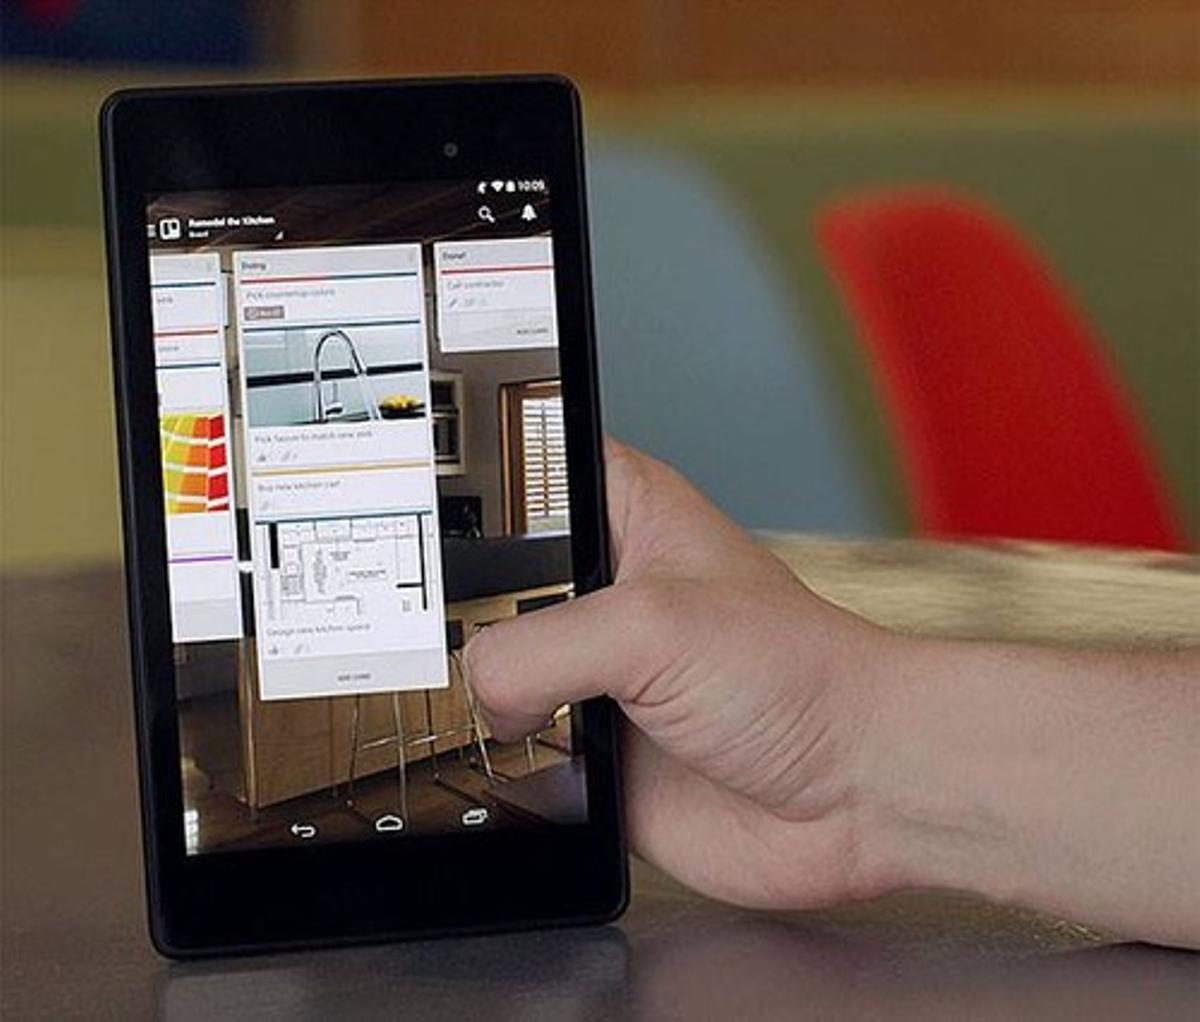 Imatge de l’’app’ Trello en un dispositiu mòbil.